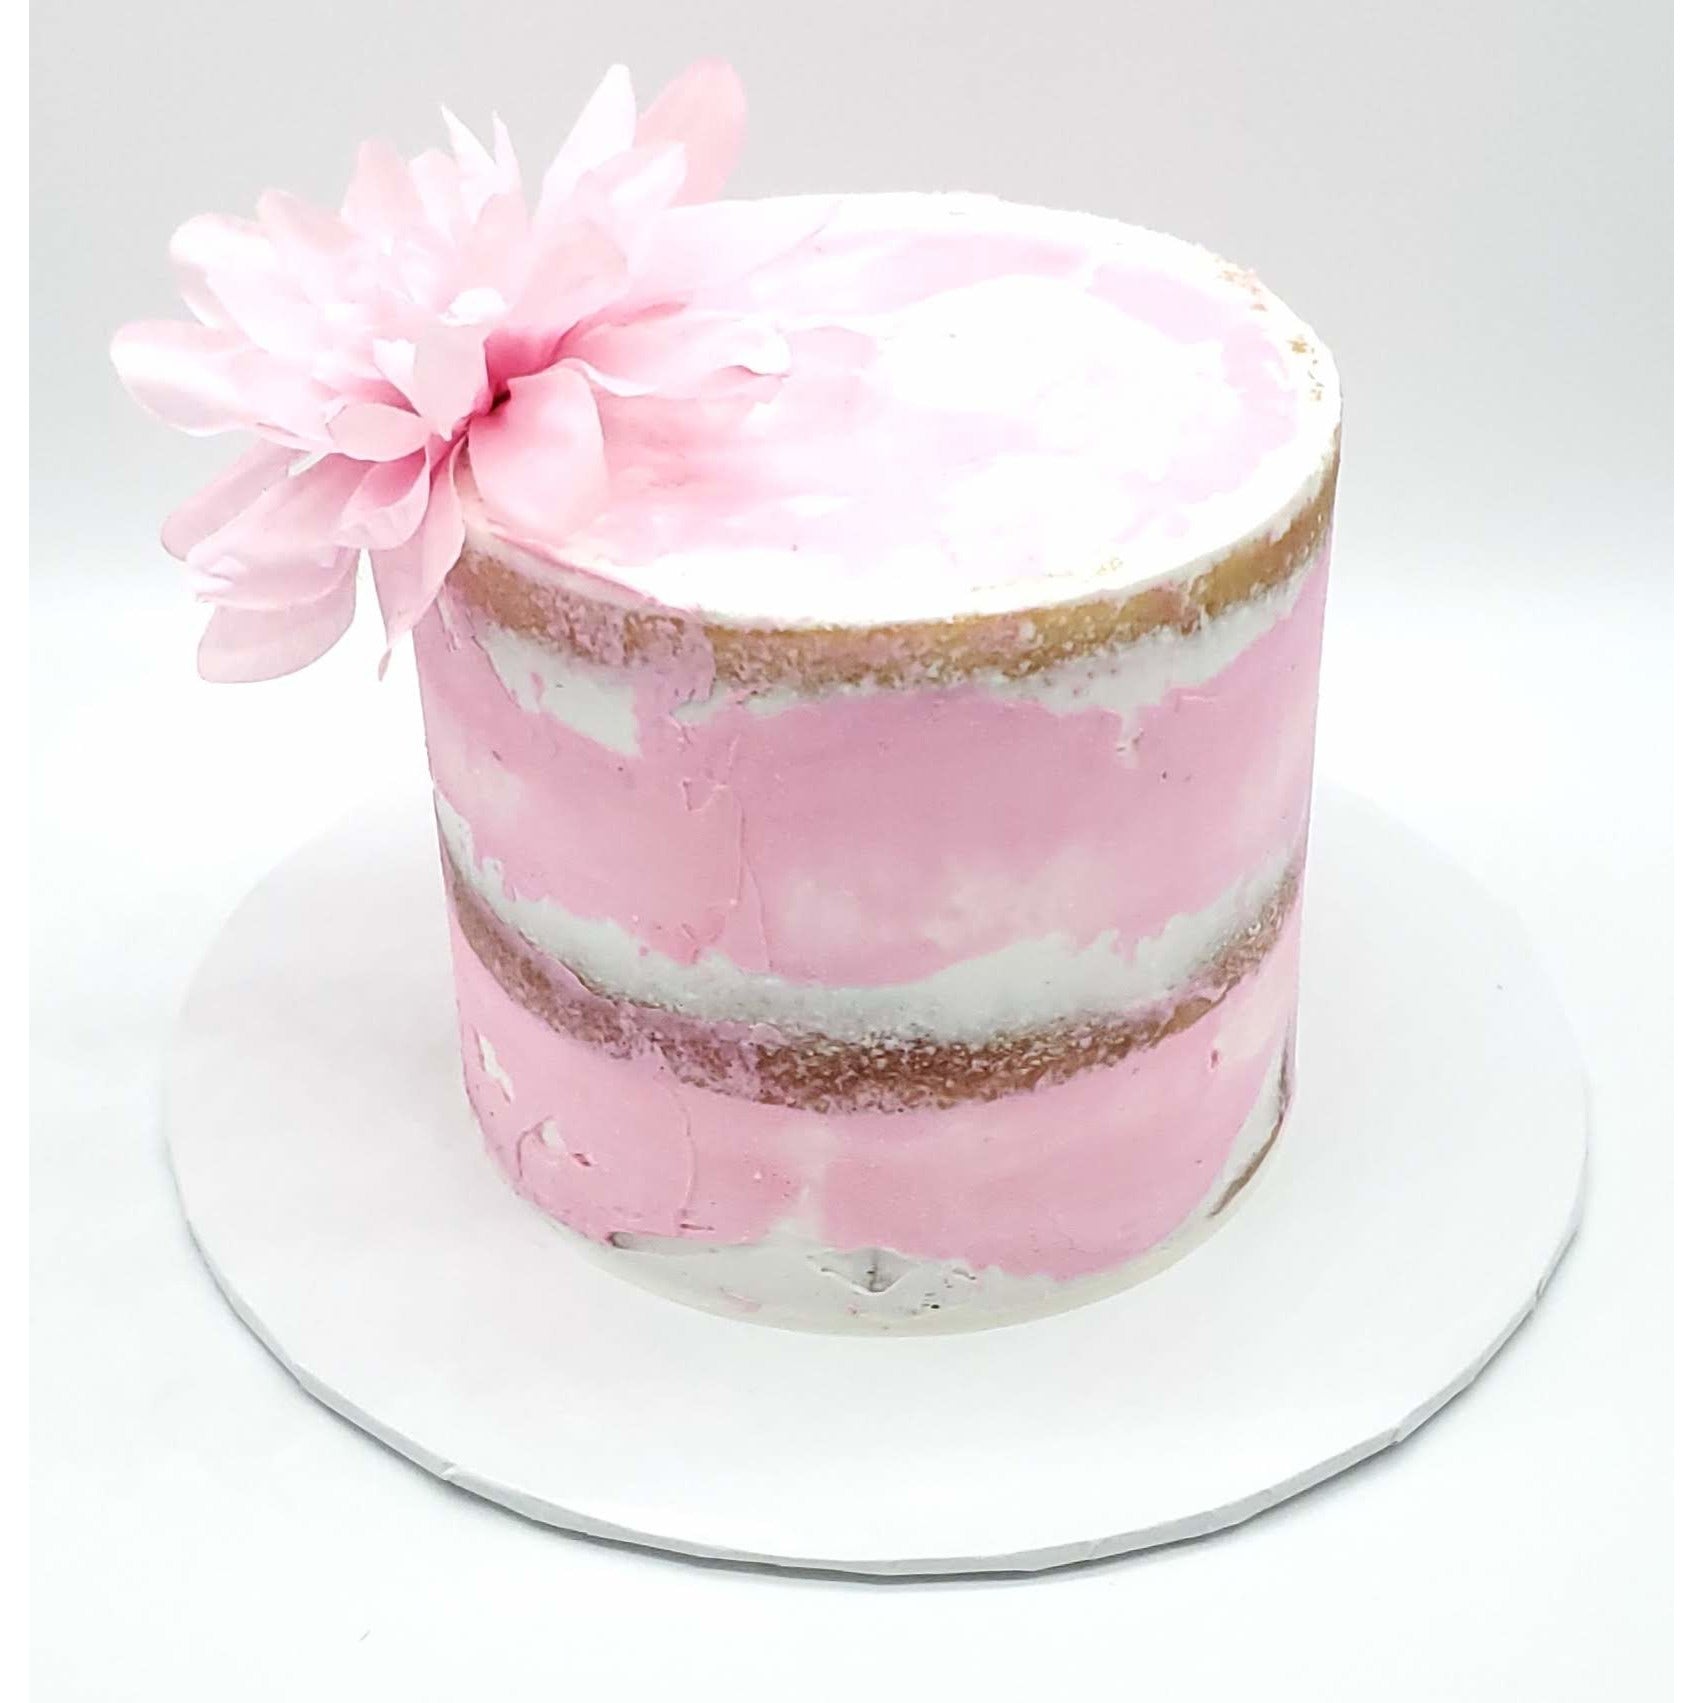 Semi-Naked Celebration Cake - 6 Inch Round - Cake